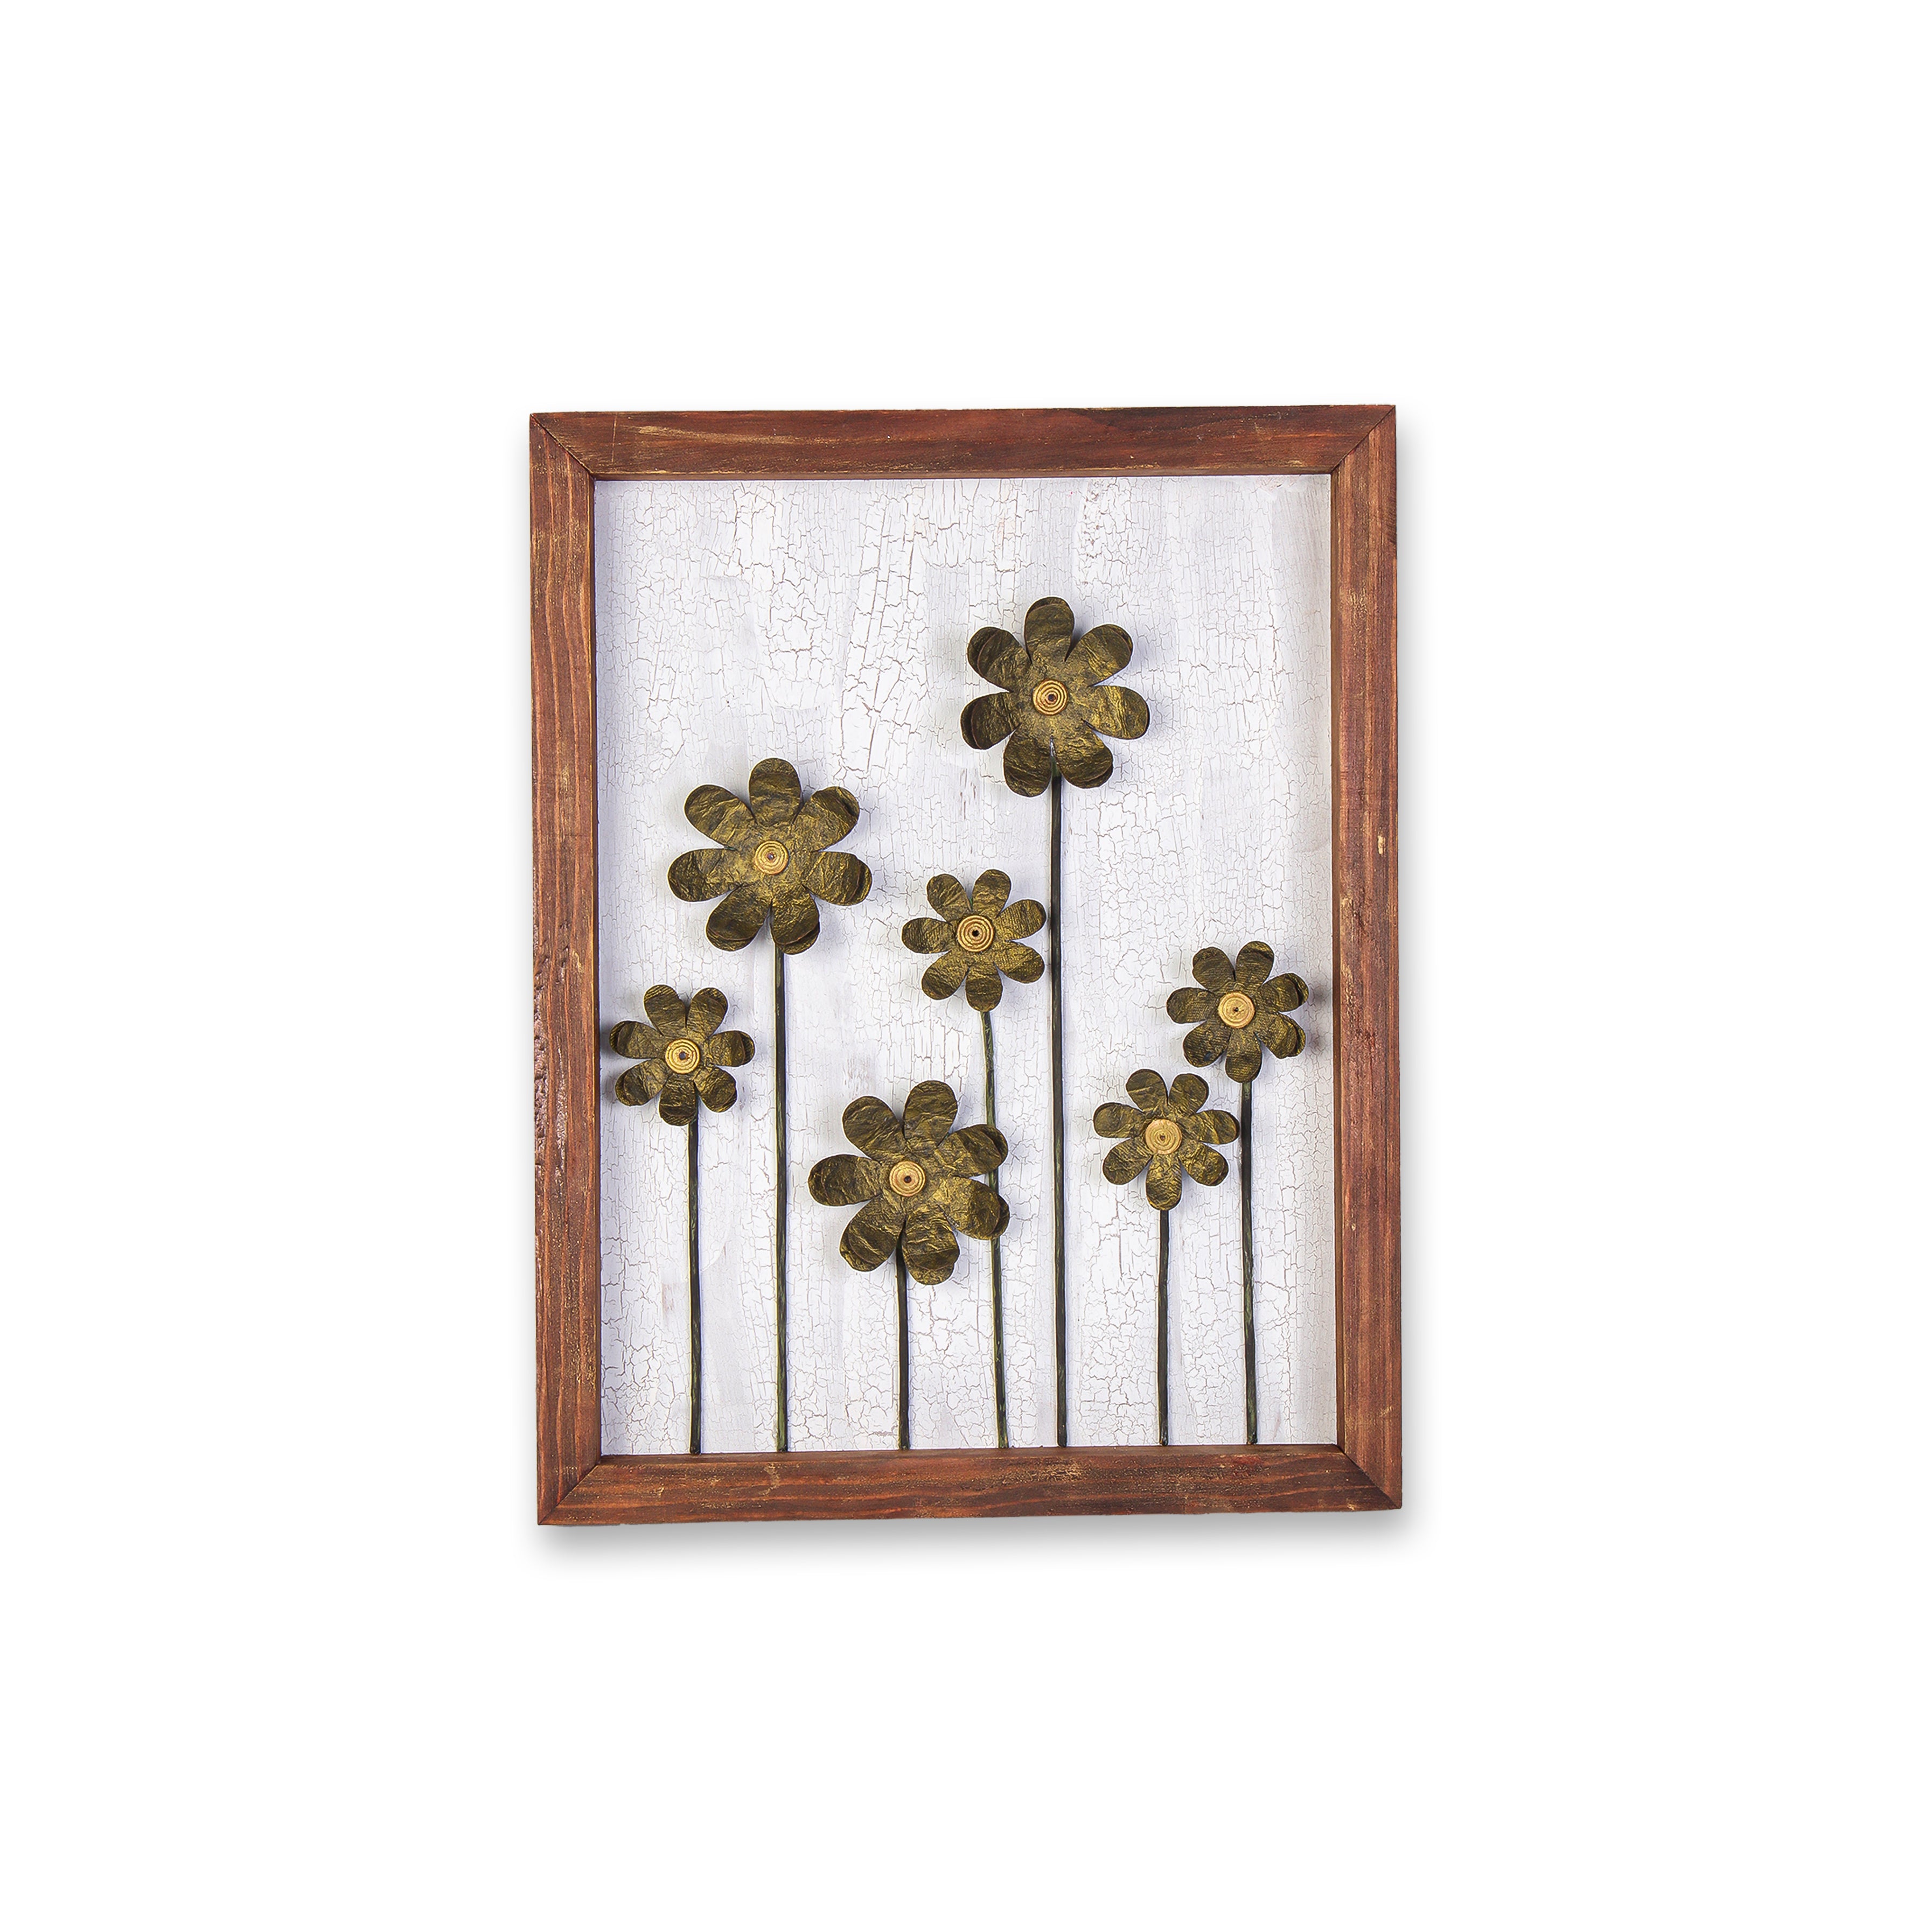 Wall Decor Handmade Daisy Field Golden Copper 3D Floral Art with Metallic Effect Approx H14 X L11